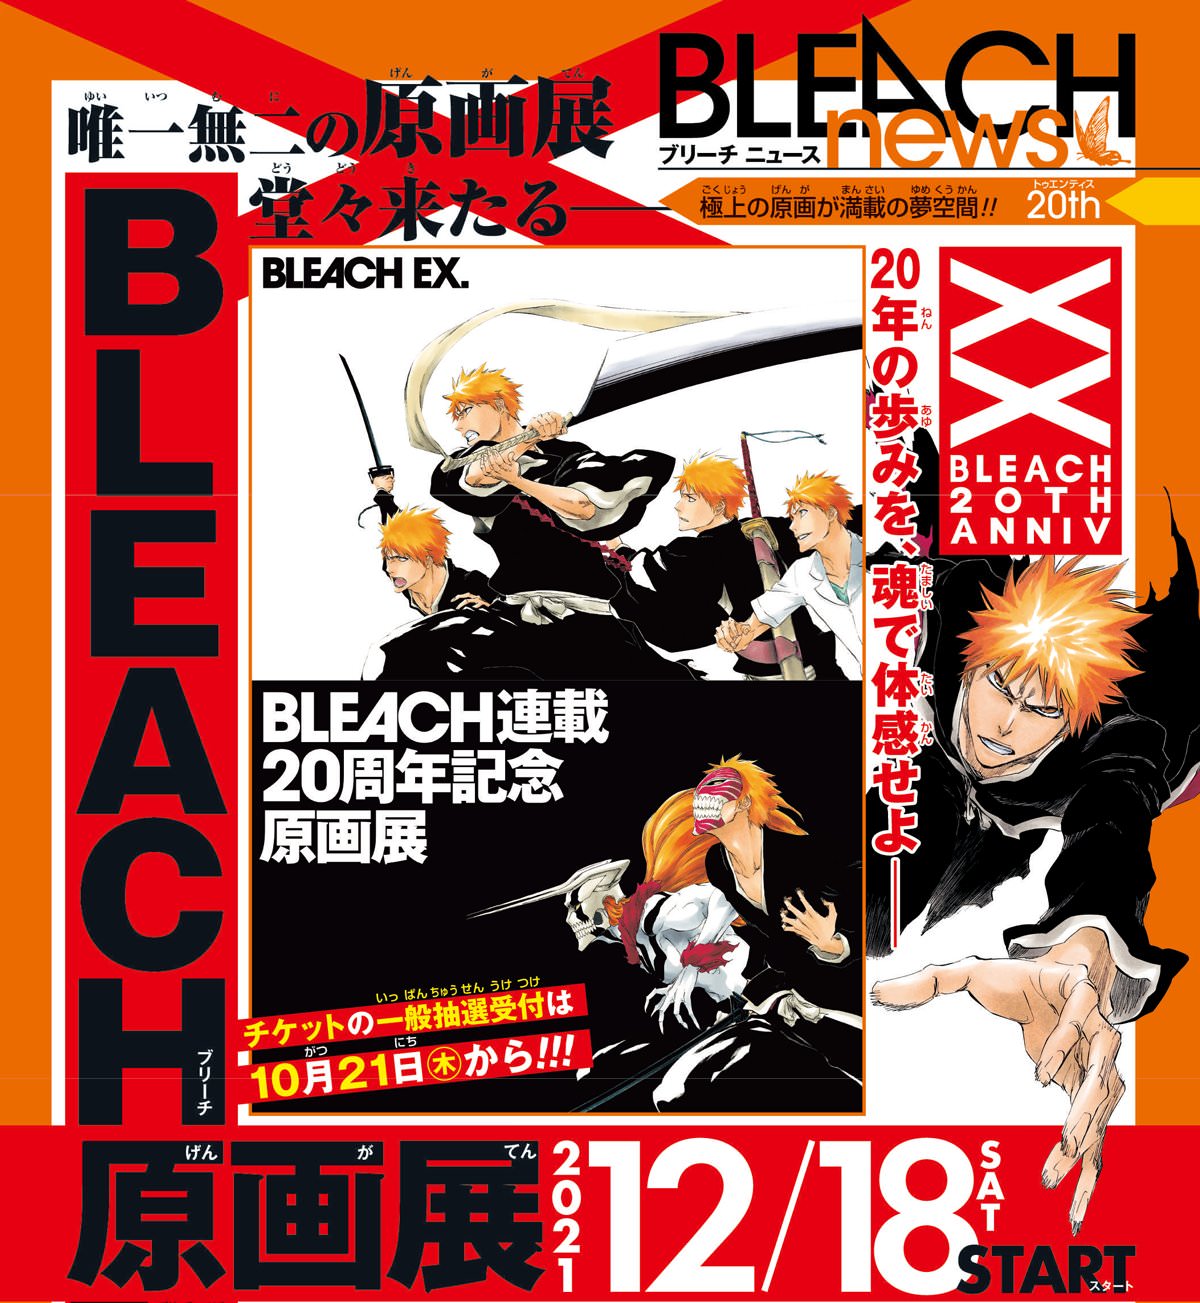 久保帯人 Bleach展 12月18日より渋谷ヒカリエで初の原画展 開催